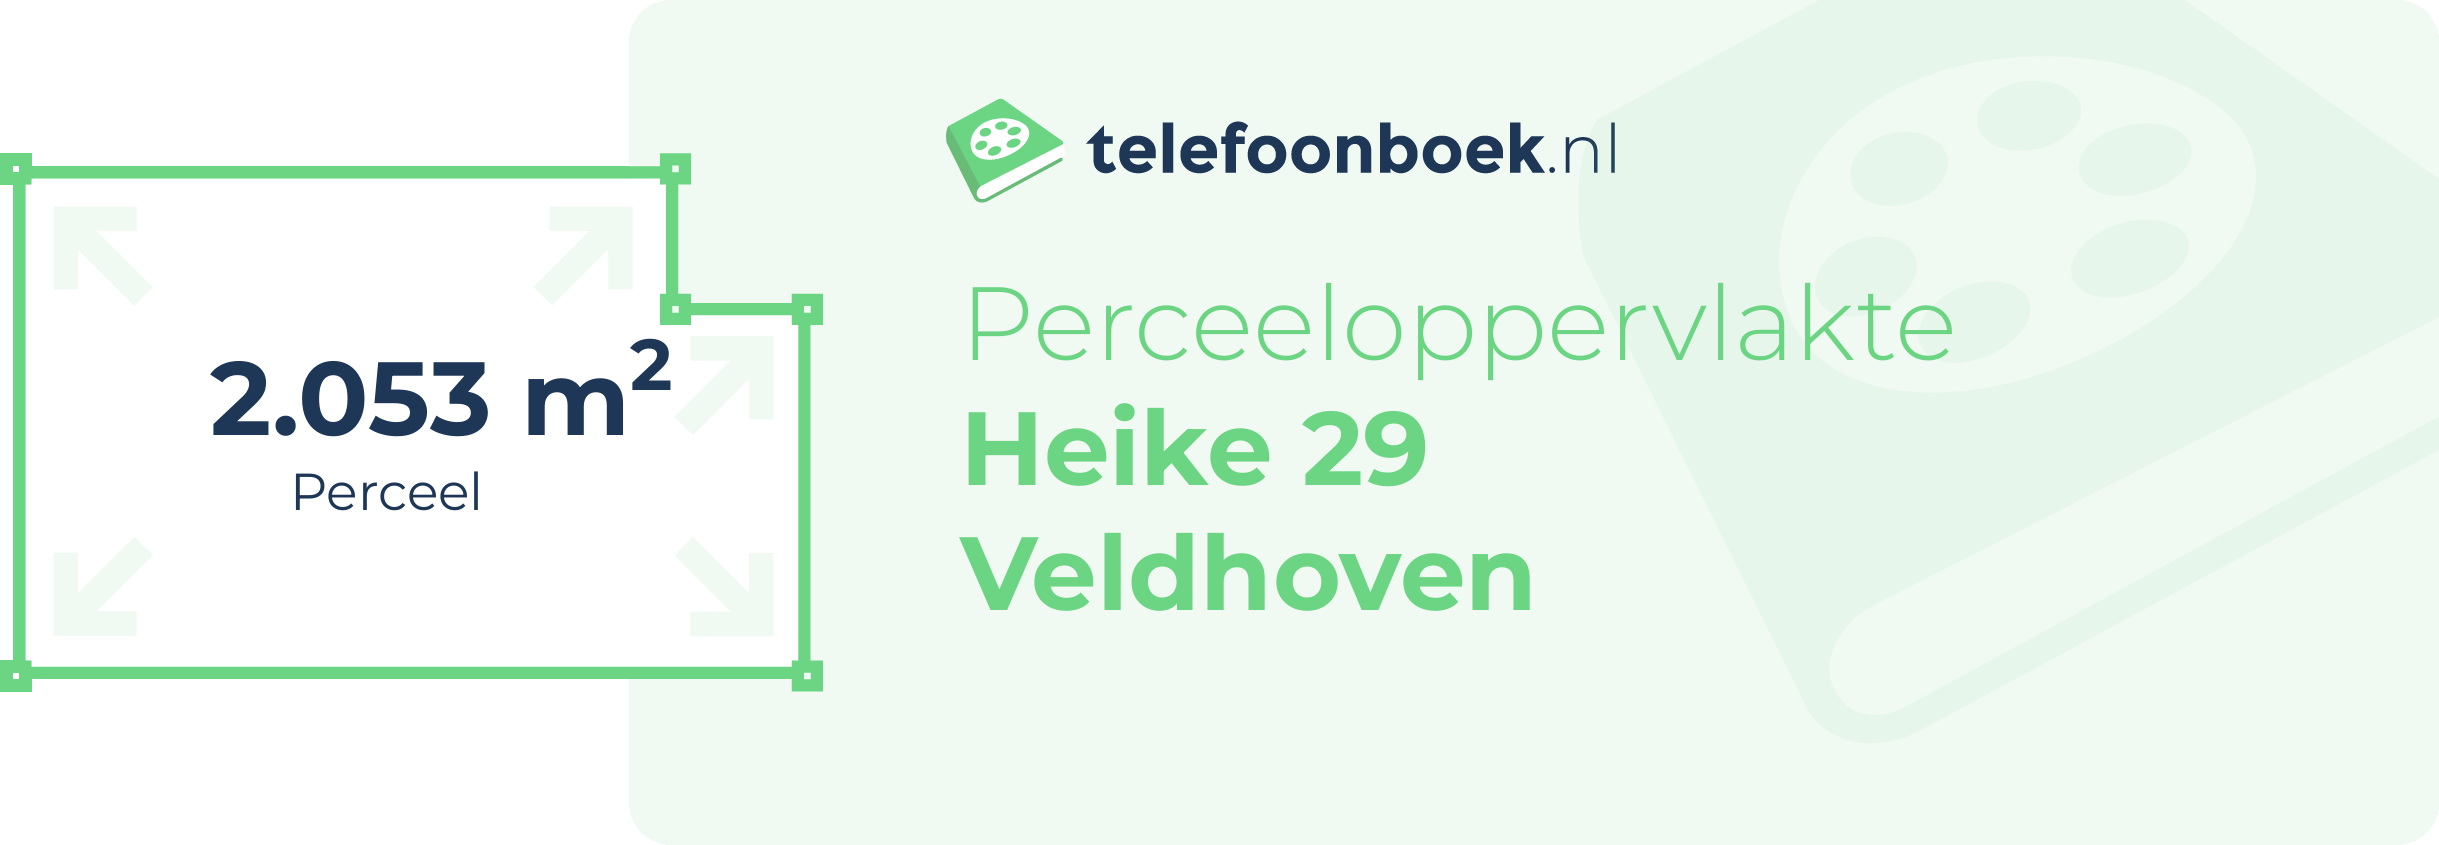 Perceeloppervlakte Heike 29 Veldhoven